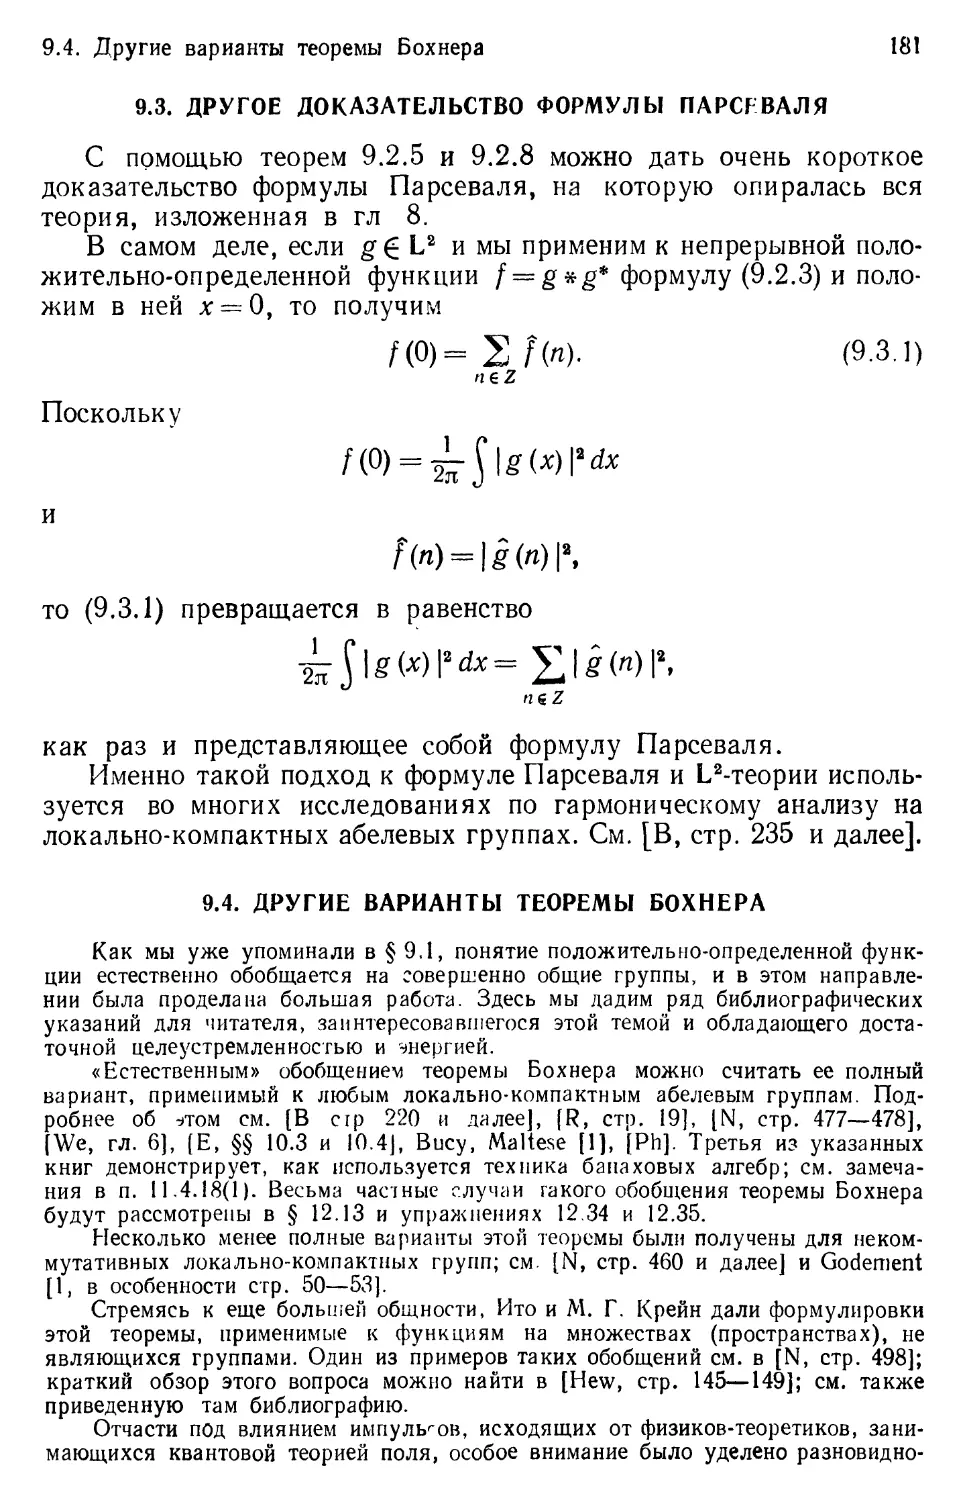 9.3. Другое доказательство формулы Парсеваля
9.4. Другие варианты теоремы Бохнера